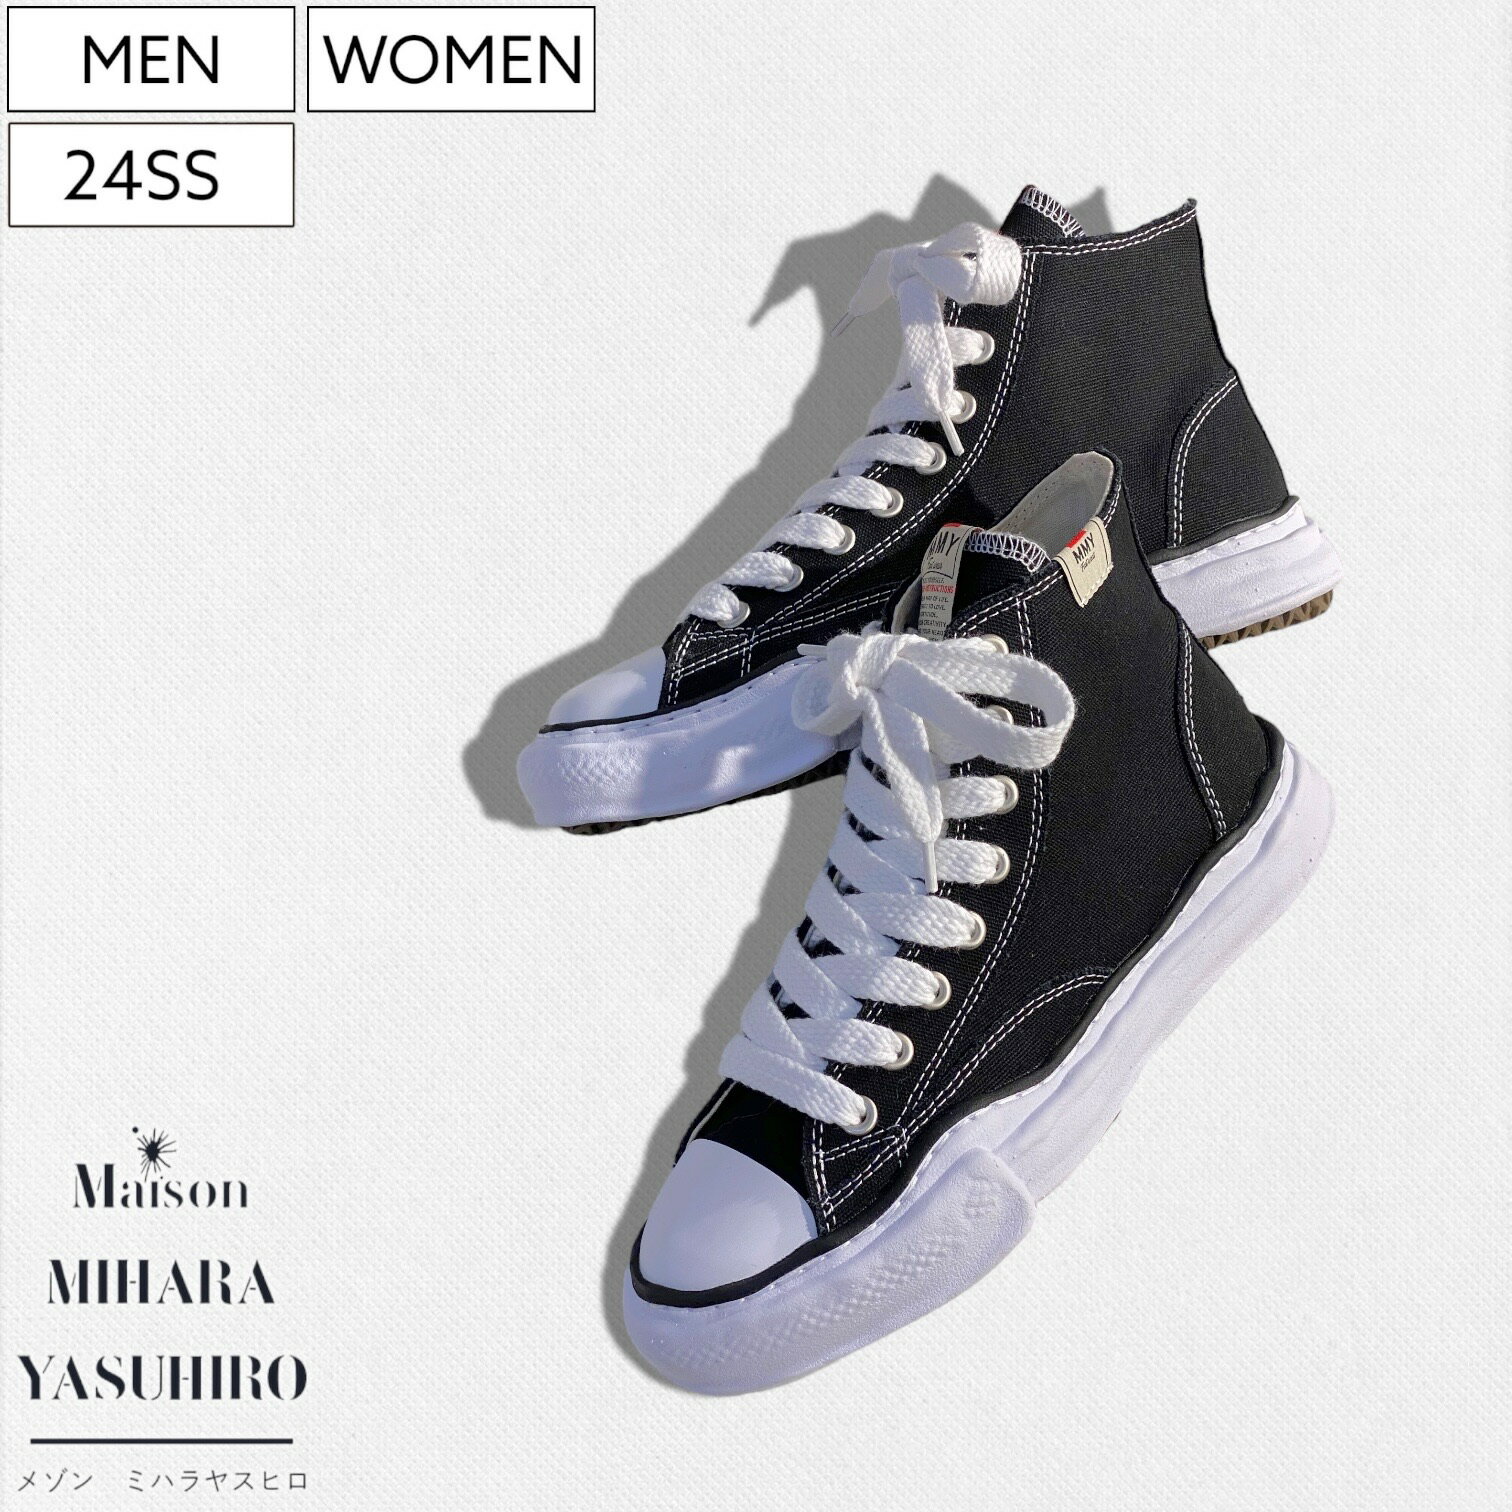 【定価35,200円(税込)】Maison MIHARA YASUHIRO - メゾン ミハラヤスヒロ - デザイナー自身が粘土で型取ったオリジナルソールを使用！キャンパスハイカットスニーカー シューズ 靴 Canvas High-top Sneaker PETERSON ピーターソン A01FW701 ホワイト×ブラック